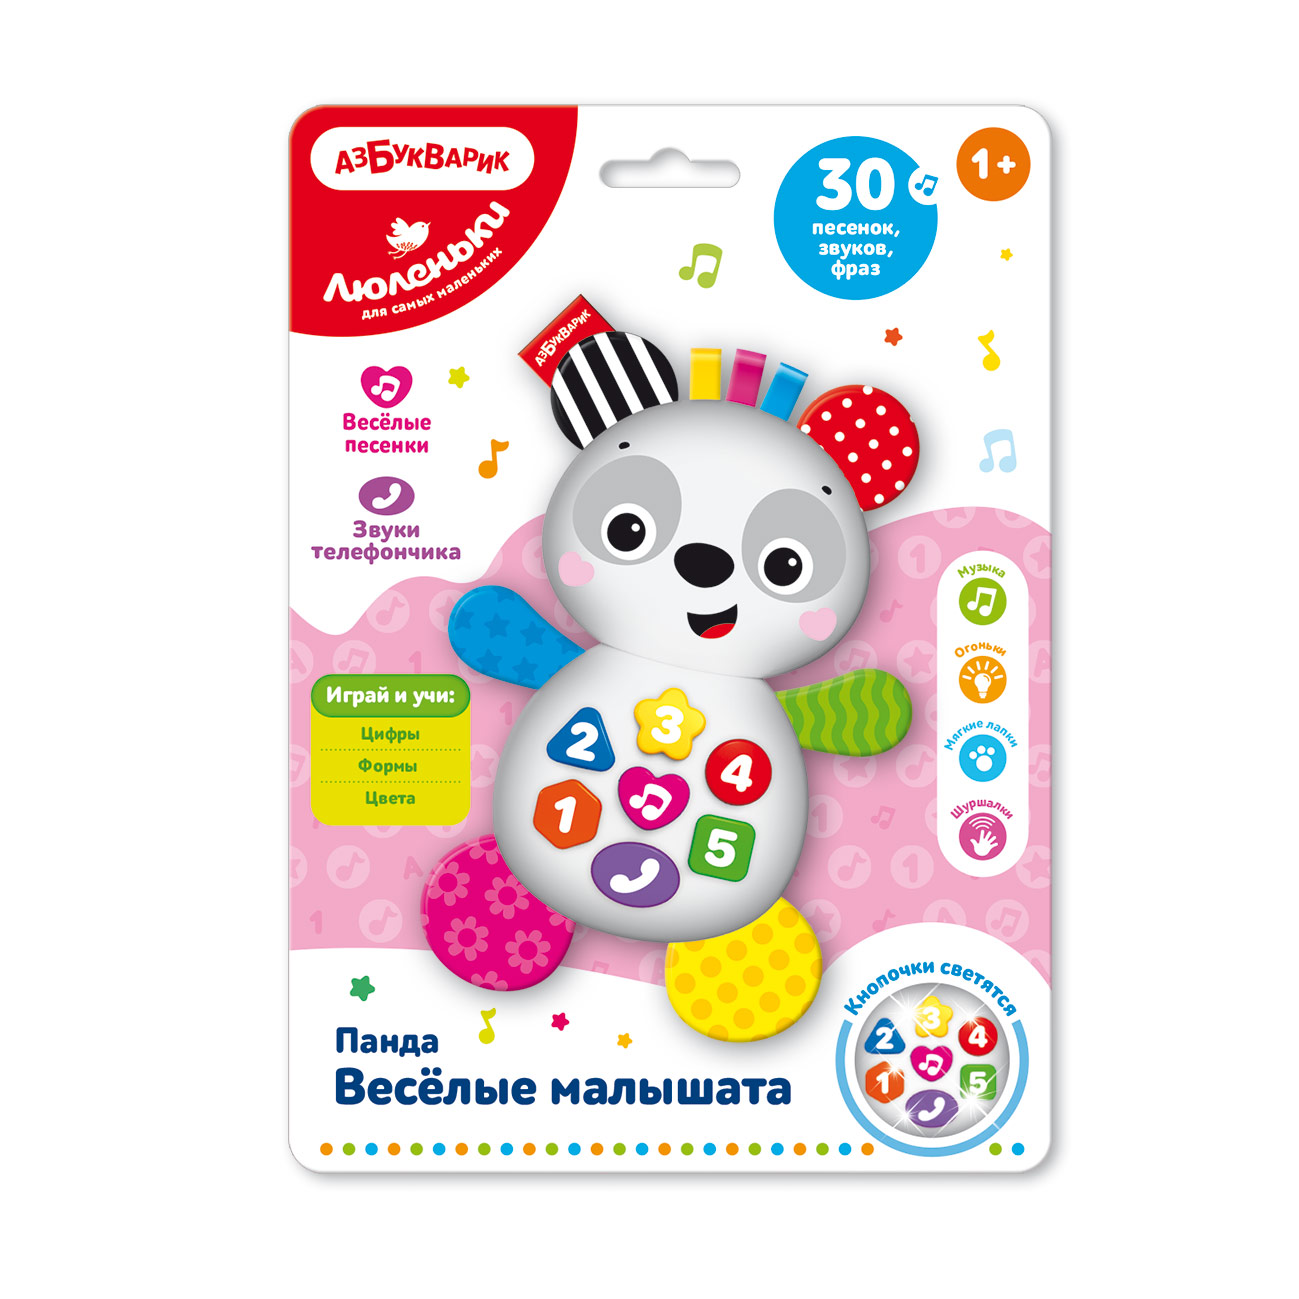 Купить Панда, Веселые малышата, Музыкальная игрушка Панда Веселые малышата Азбукварик 2734 серия Люленьки,